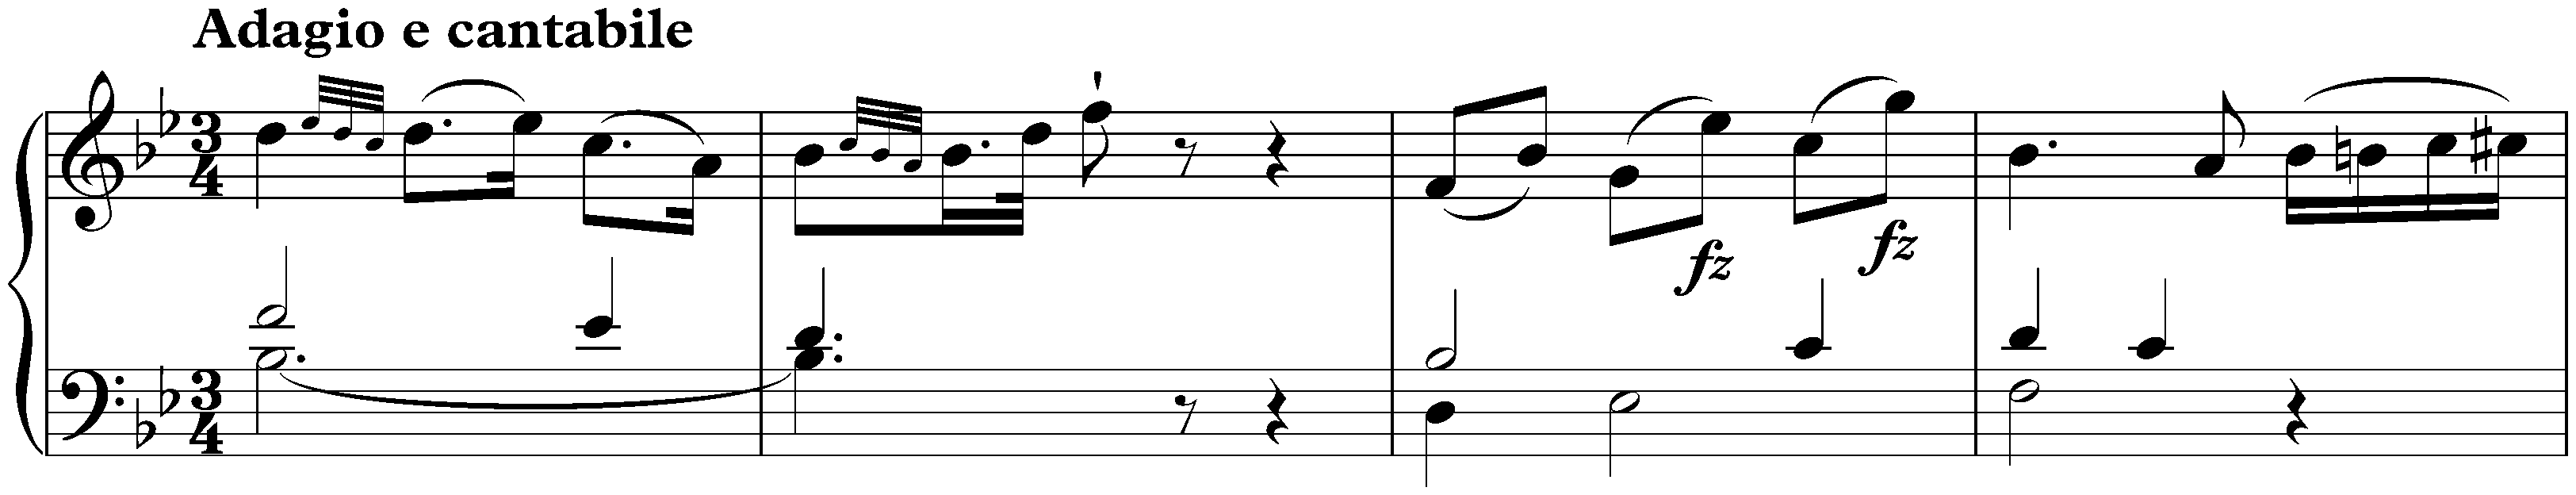 Sonata in E-flat major, Hob. XVI:49; 2. Adagio e cantabile